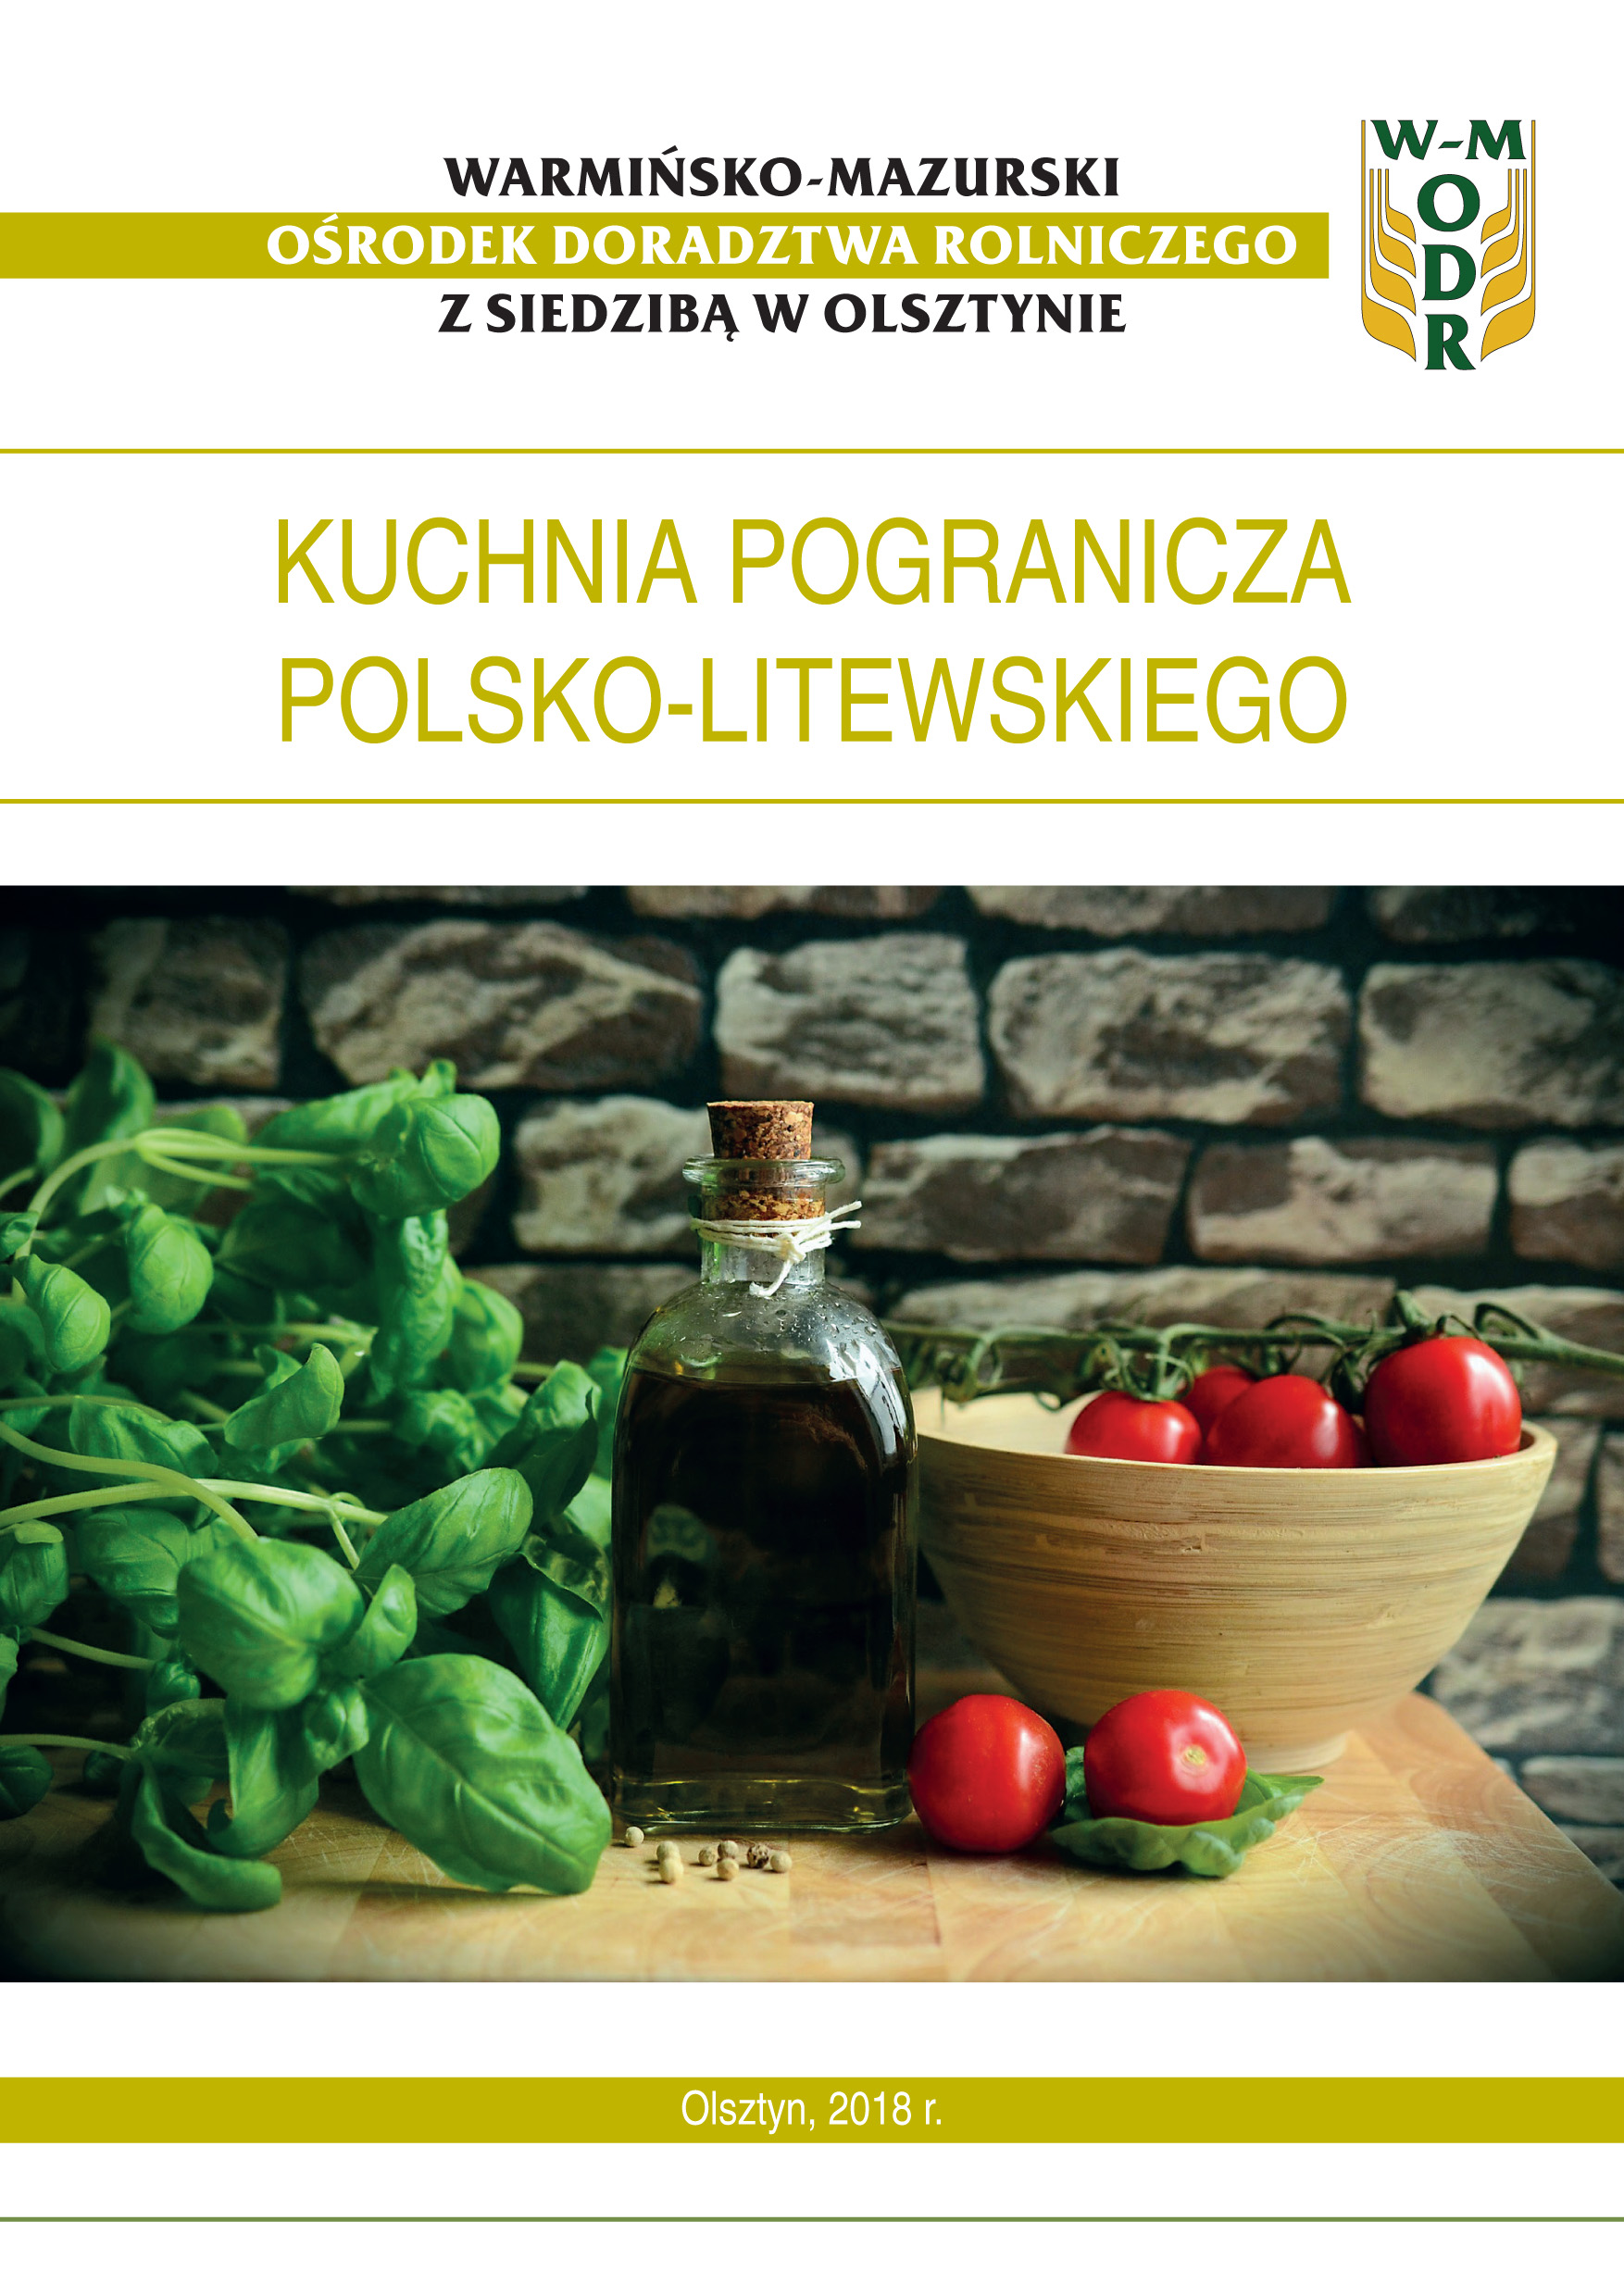 Kuchnia pogranicza polsko-litewskiego